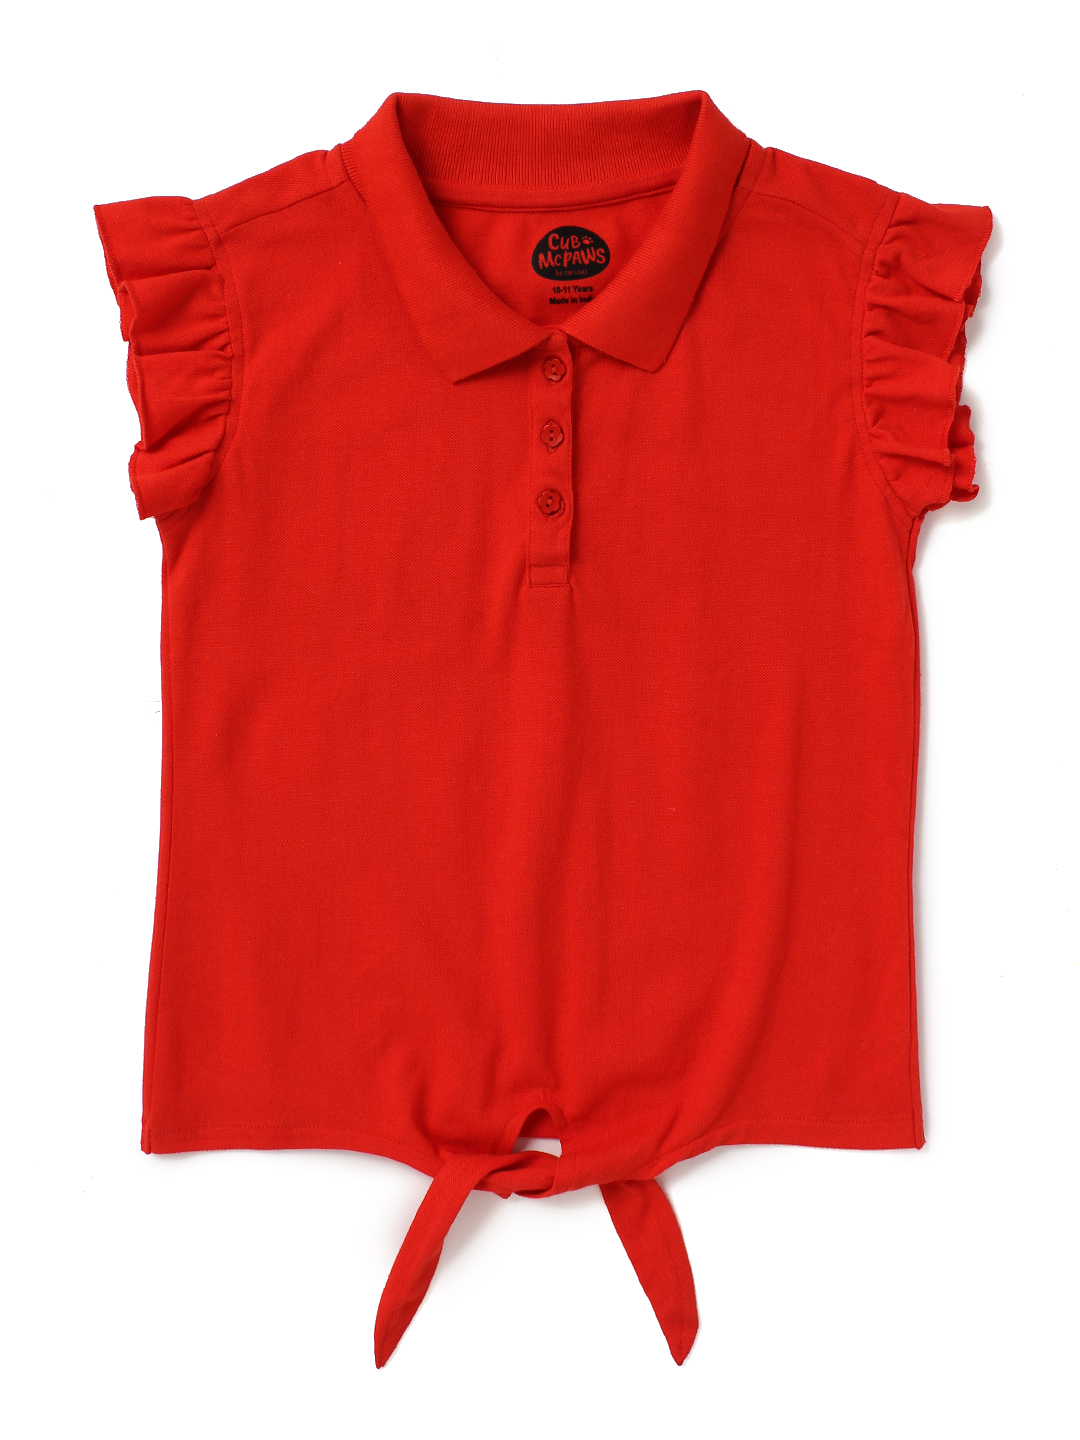 Girls Cherry Red T-Shirt